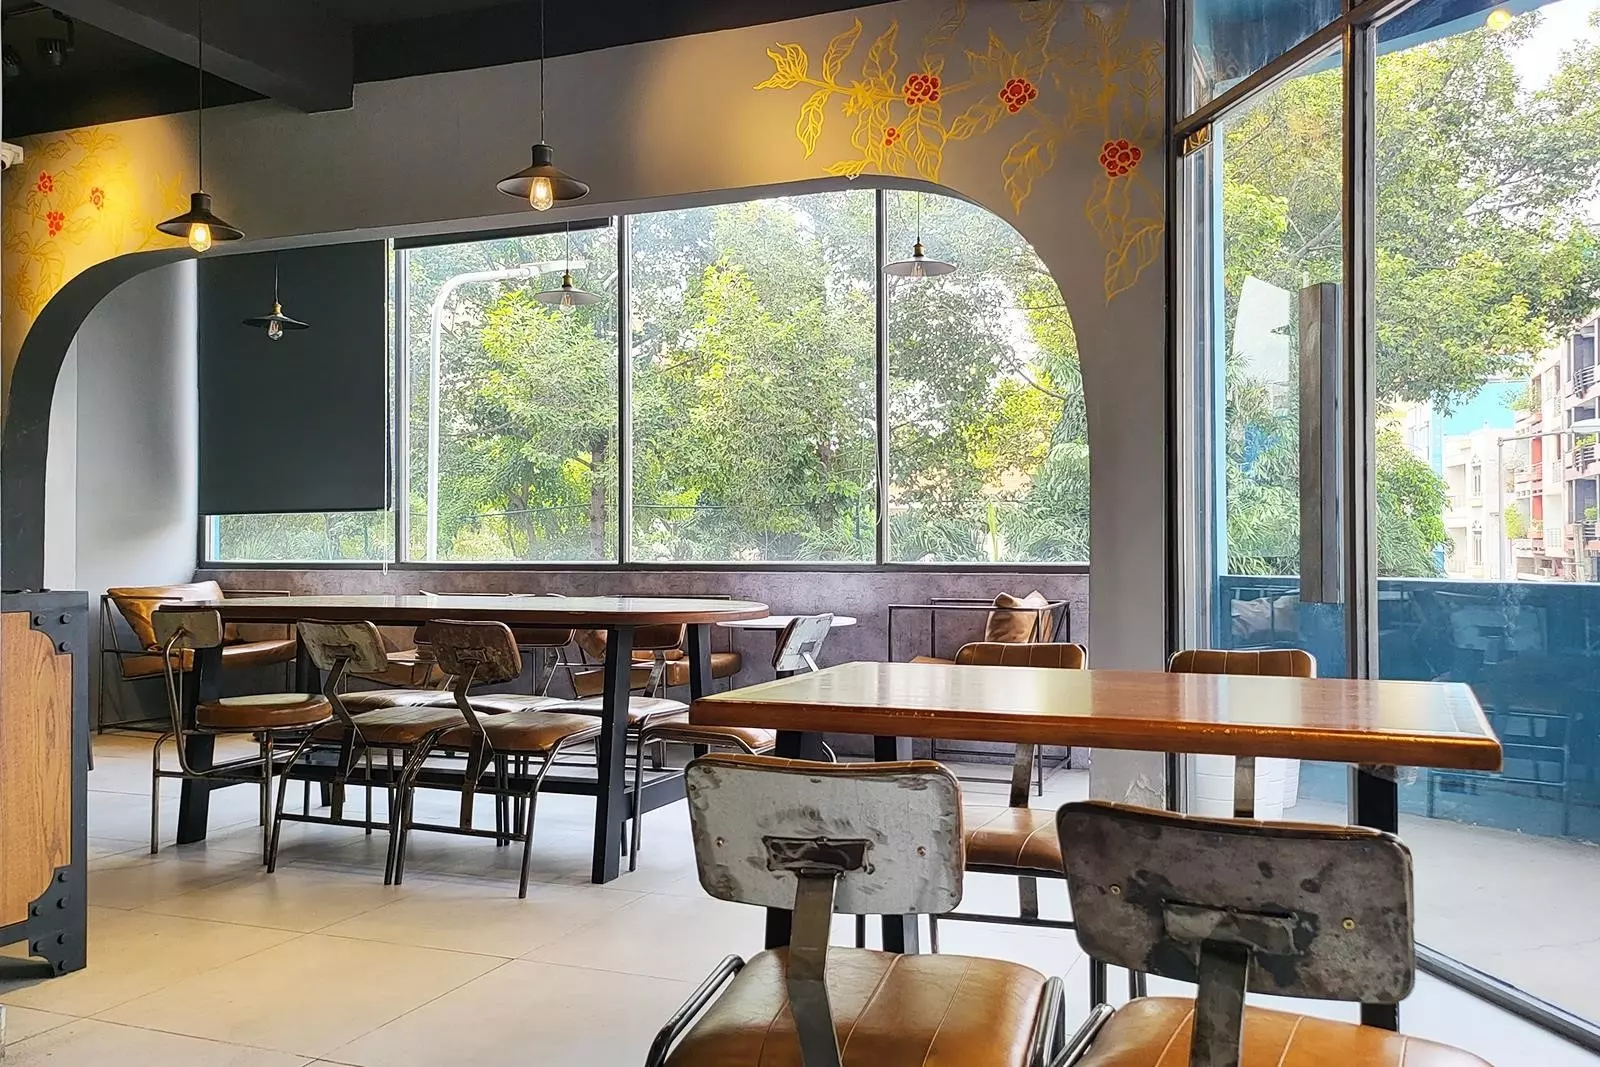 Katinat Saigon Kafe là một quán cà phê nổi tiếng ở Sài Gòn, với không gian thiết kế độc đáo và phong cách retro. Quán cà phê được biết đến với các món đồ uống đa dạng và thức ăn ngon, là điểm đến lý tưởng để thưởng thức cà phê và trò chuyện cùng bạn bè.